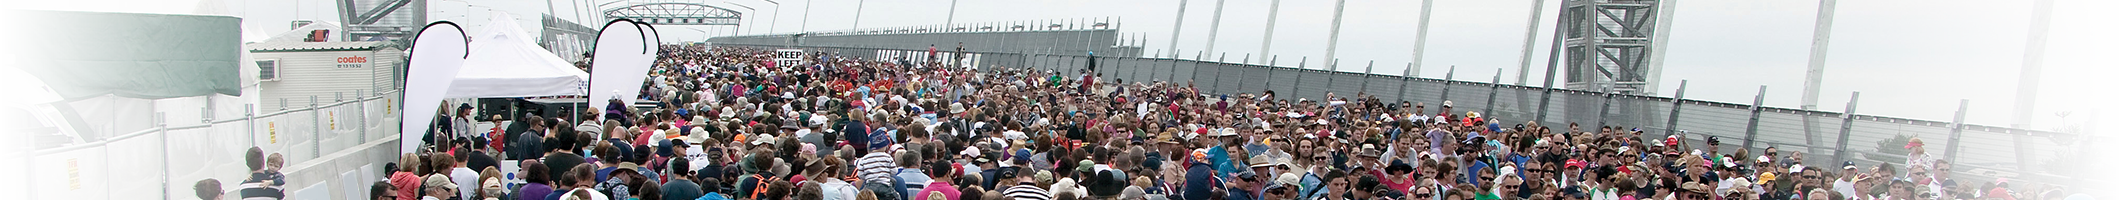 A crowd of people walking on a bridge.